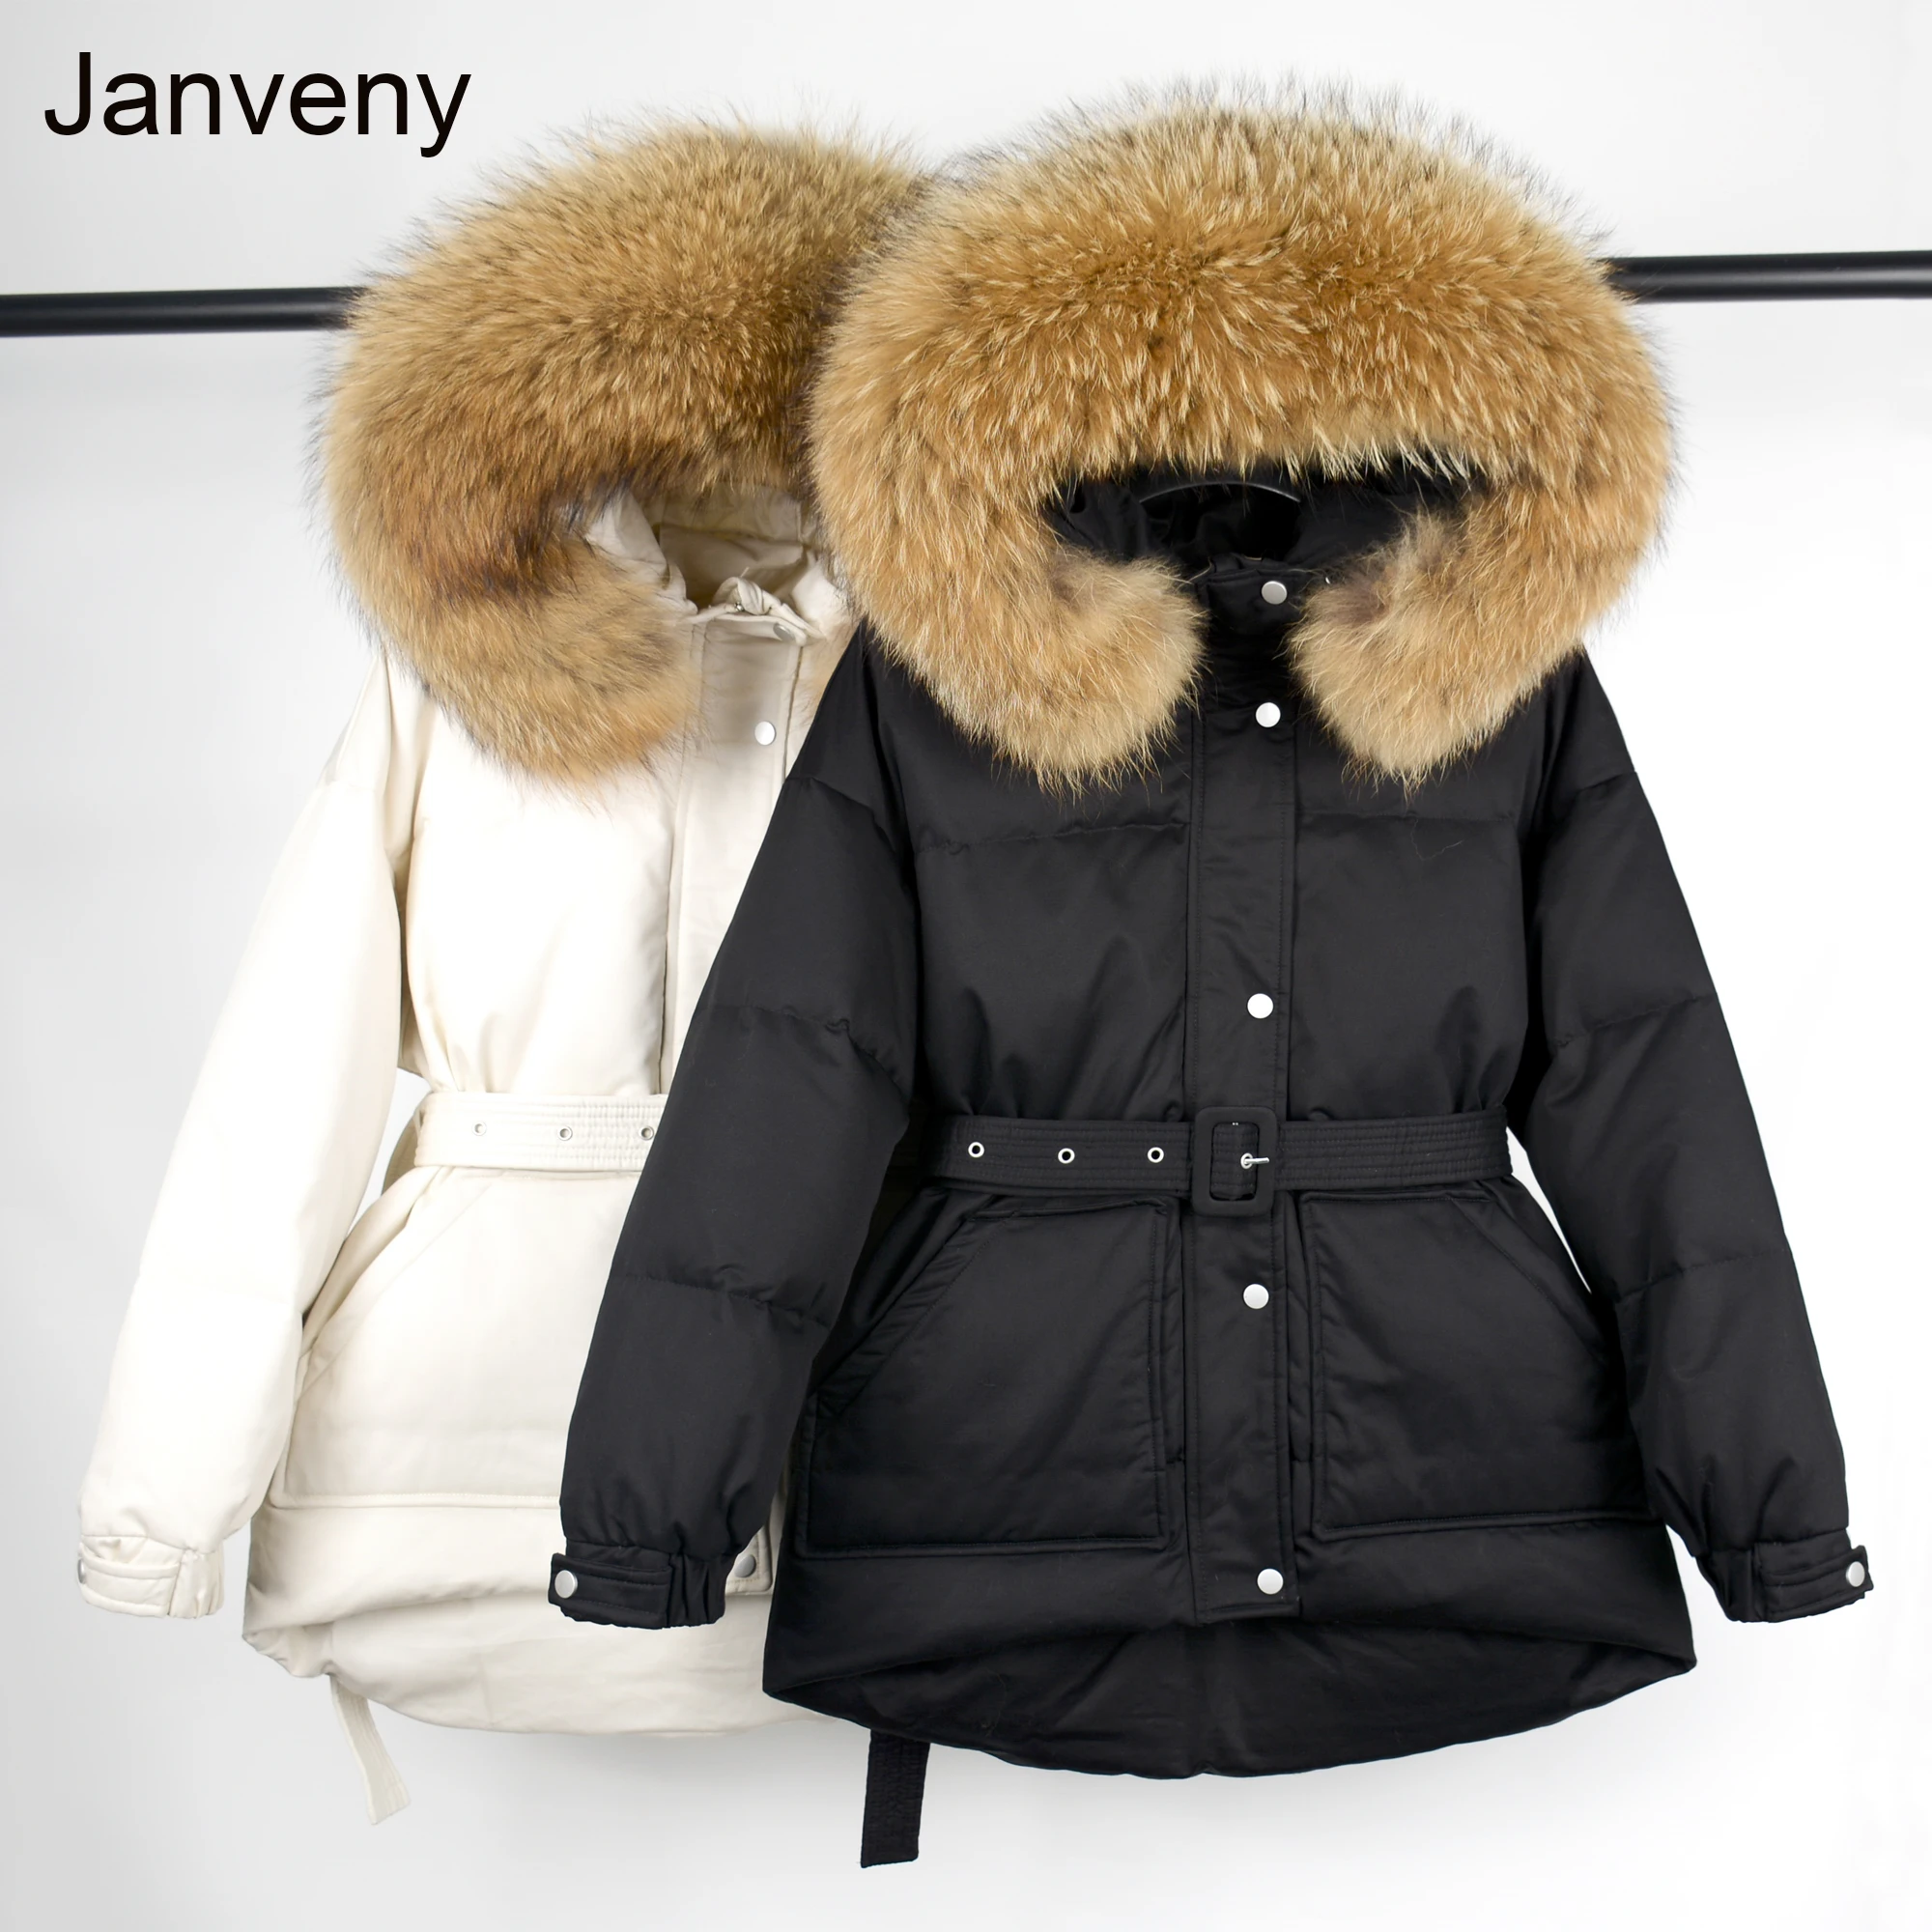 

Женский пуховик с капюшоном Janveny, зимняя куртка с большим капюшоном из натурального меха енота, 90% пуховое пальто на белом утином пуху, толст...